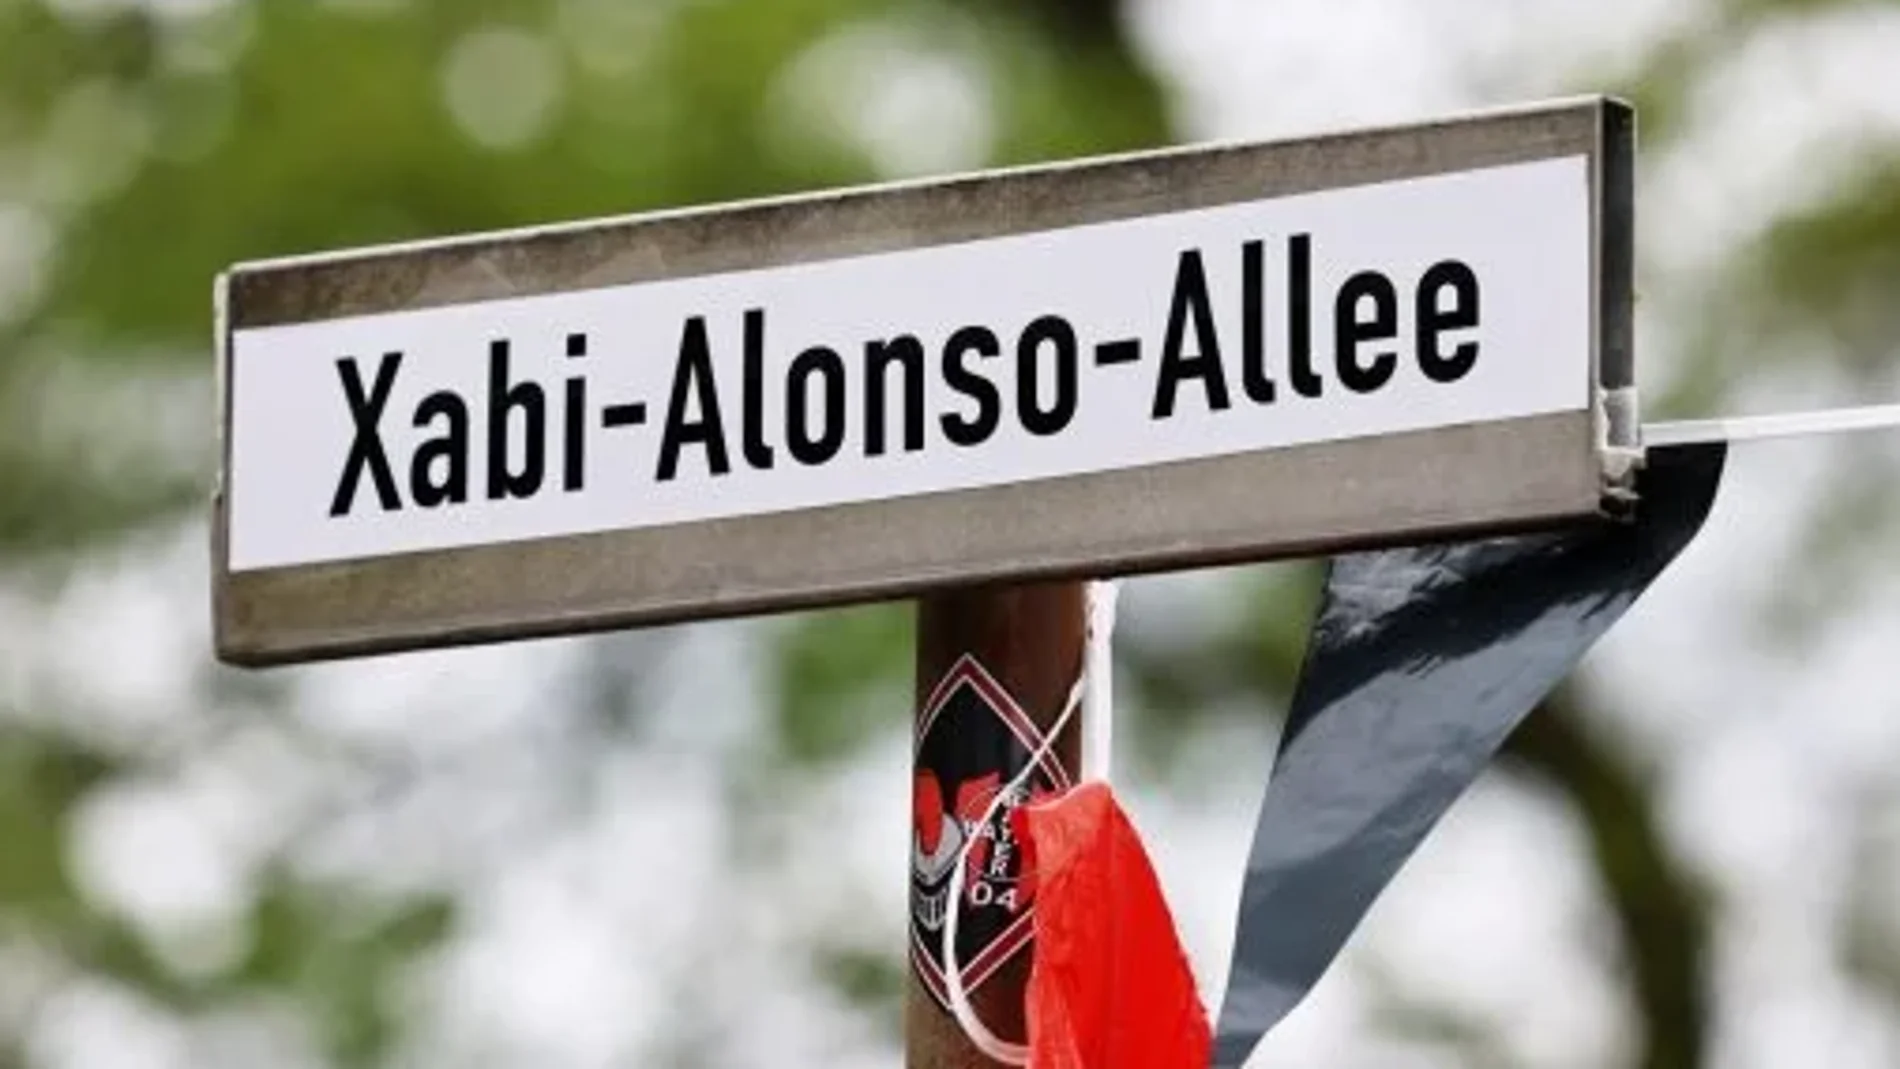 La simbólica calle que los hinchas dedicaron a Xabi Alonso